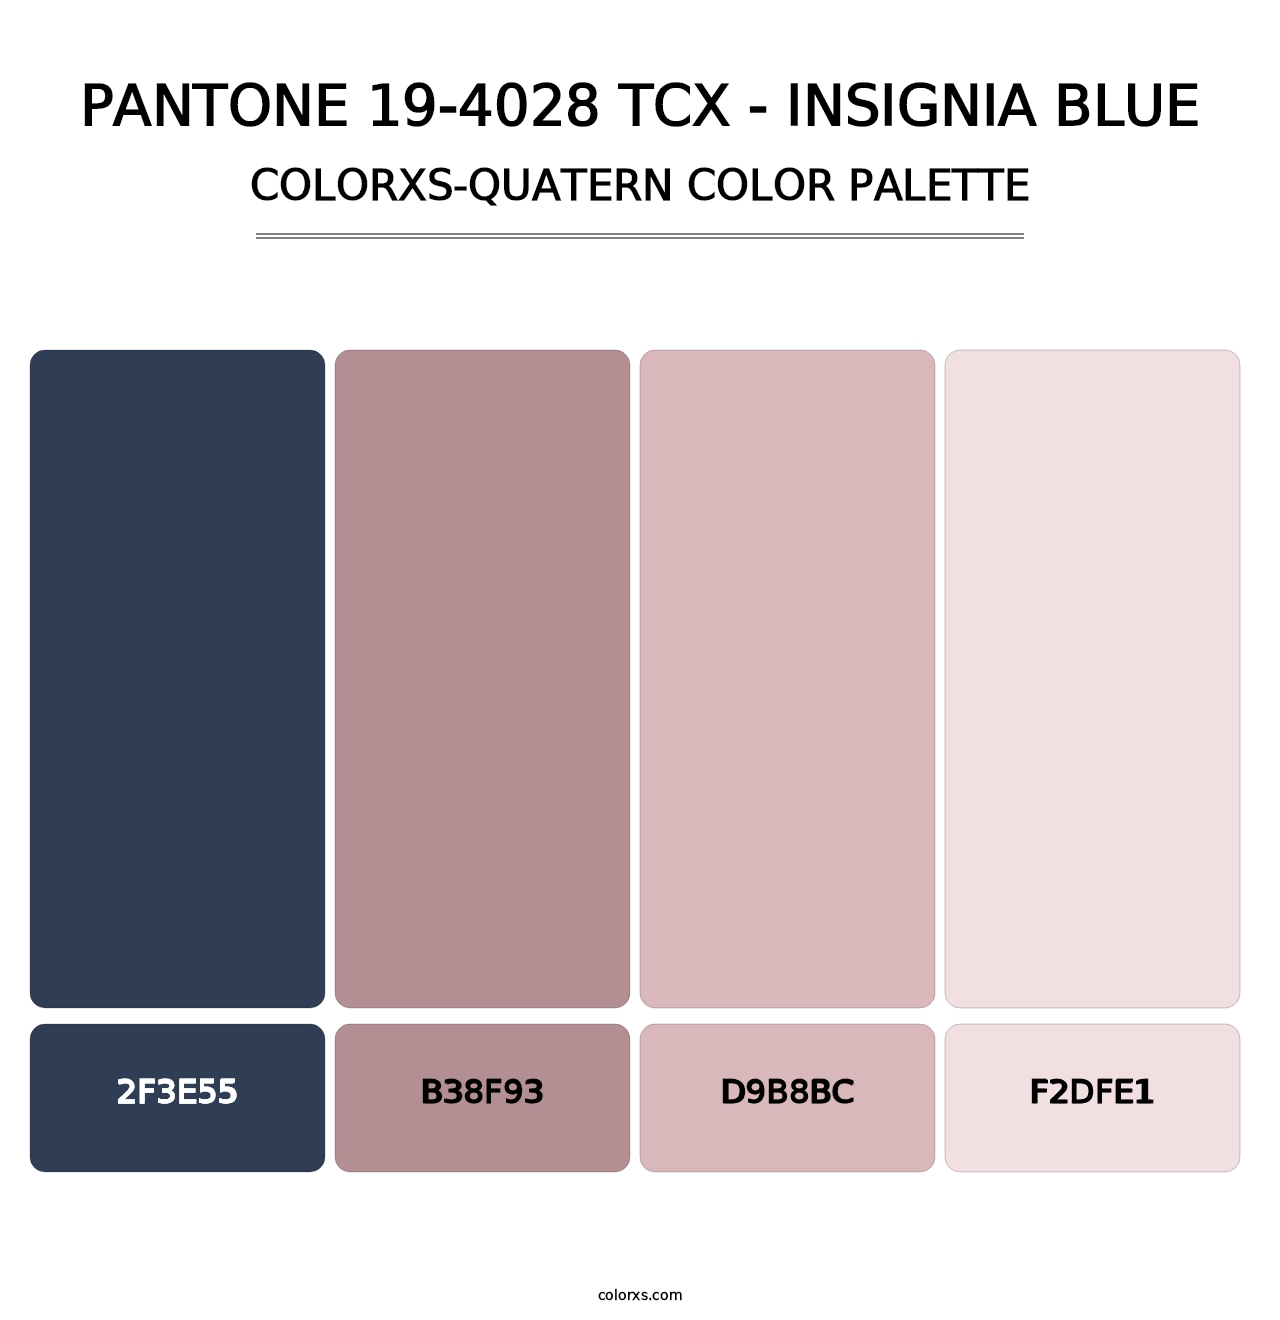 PANTONE 19-4028 TCX - Insignia Blue - Colorxs Quatern Palette